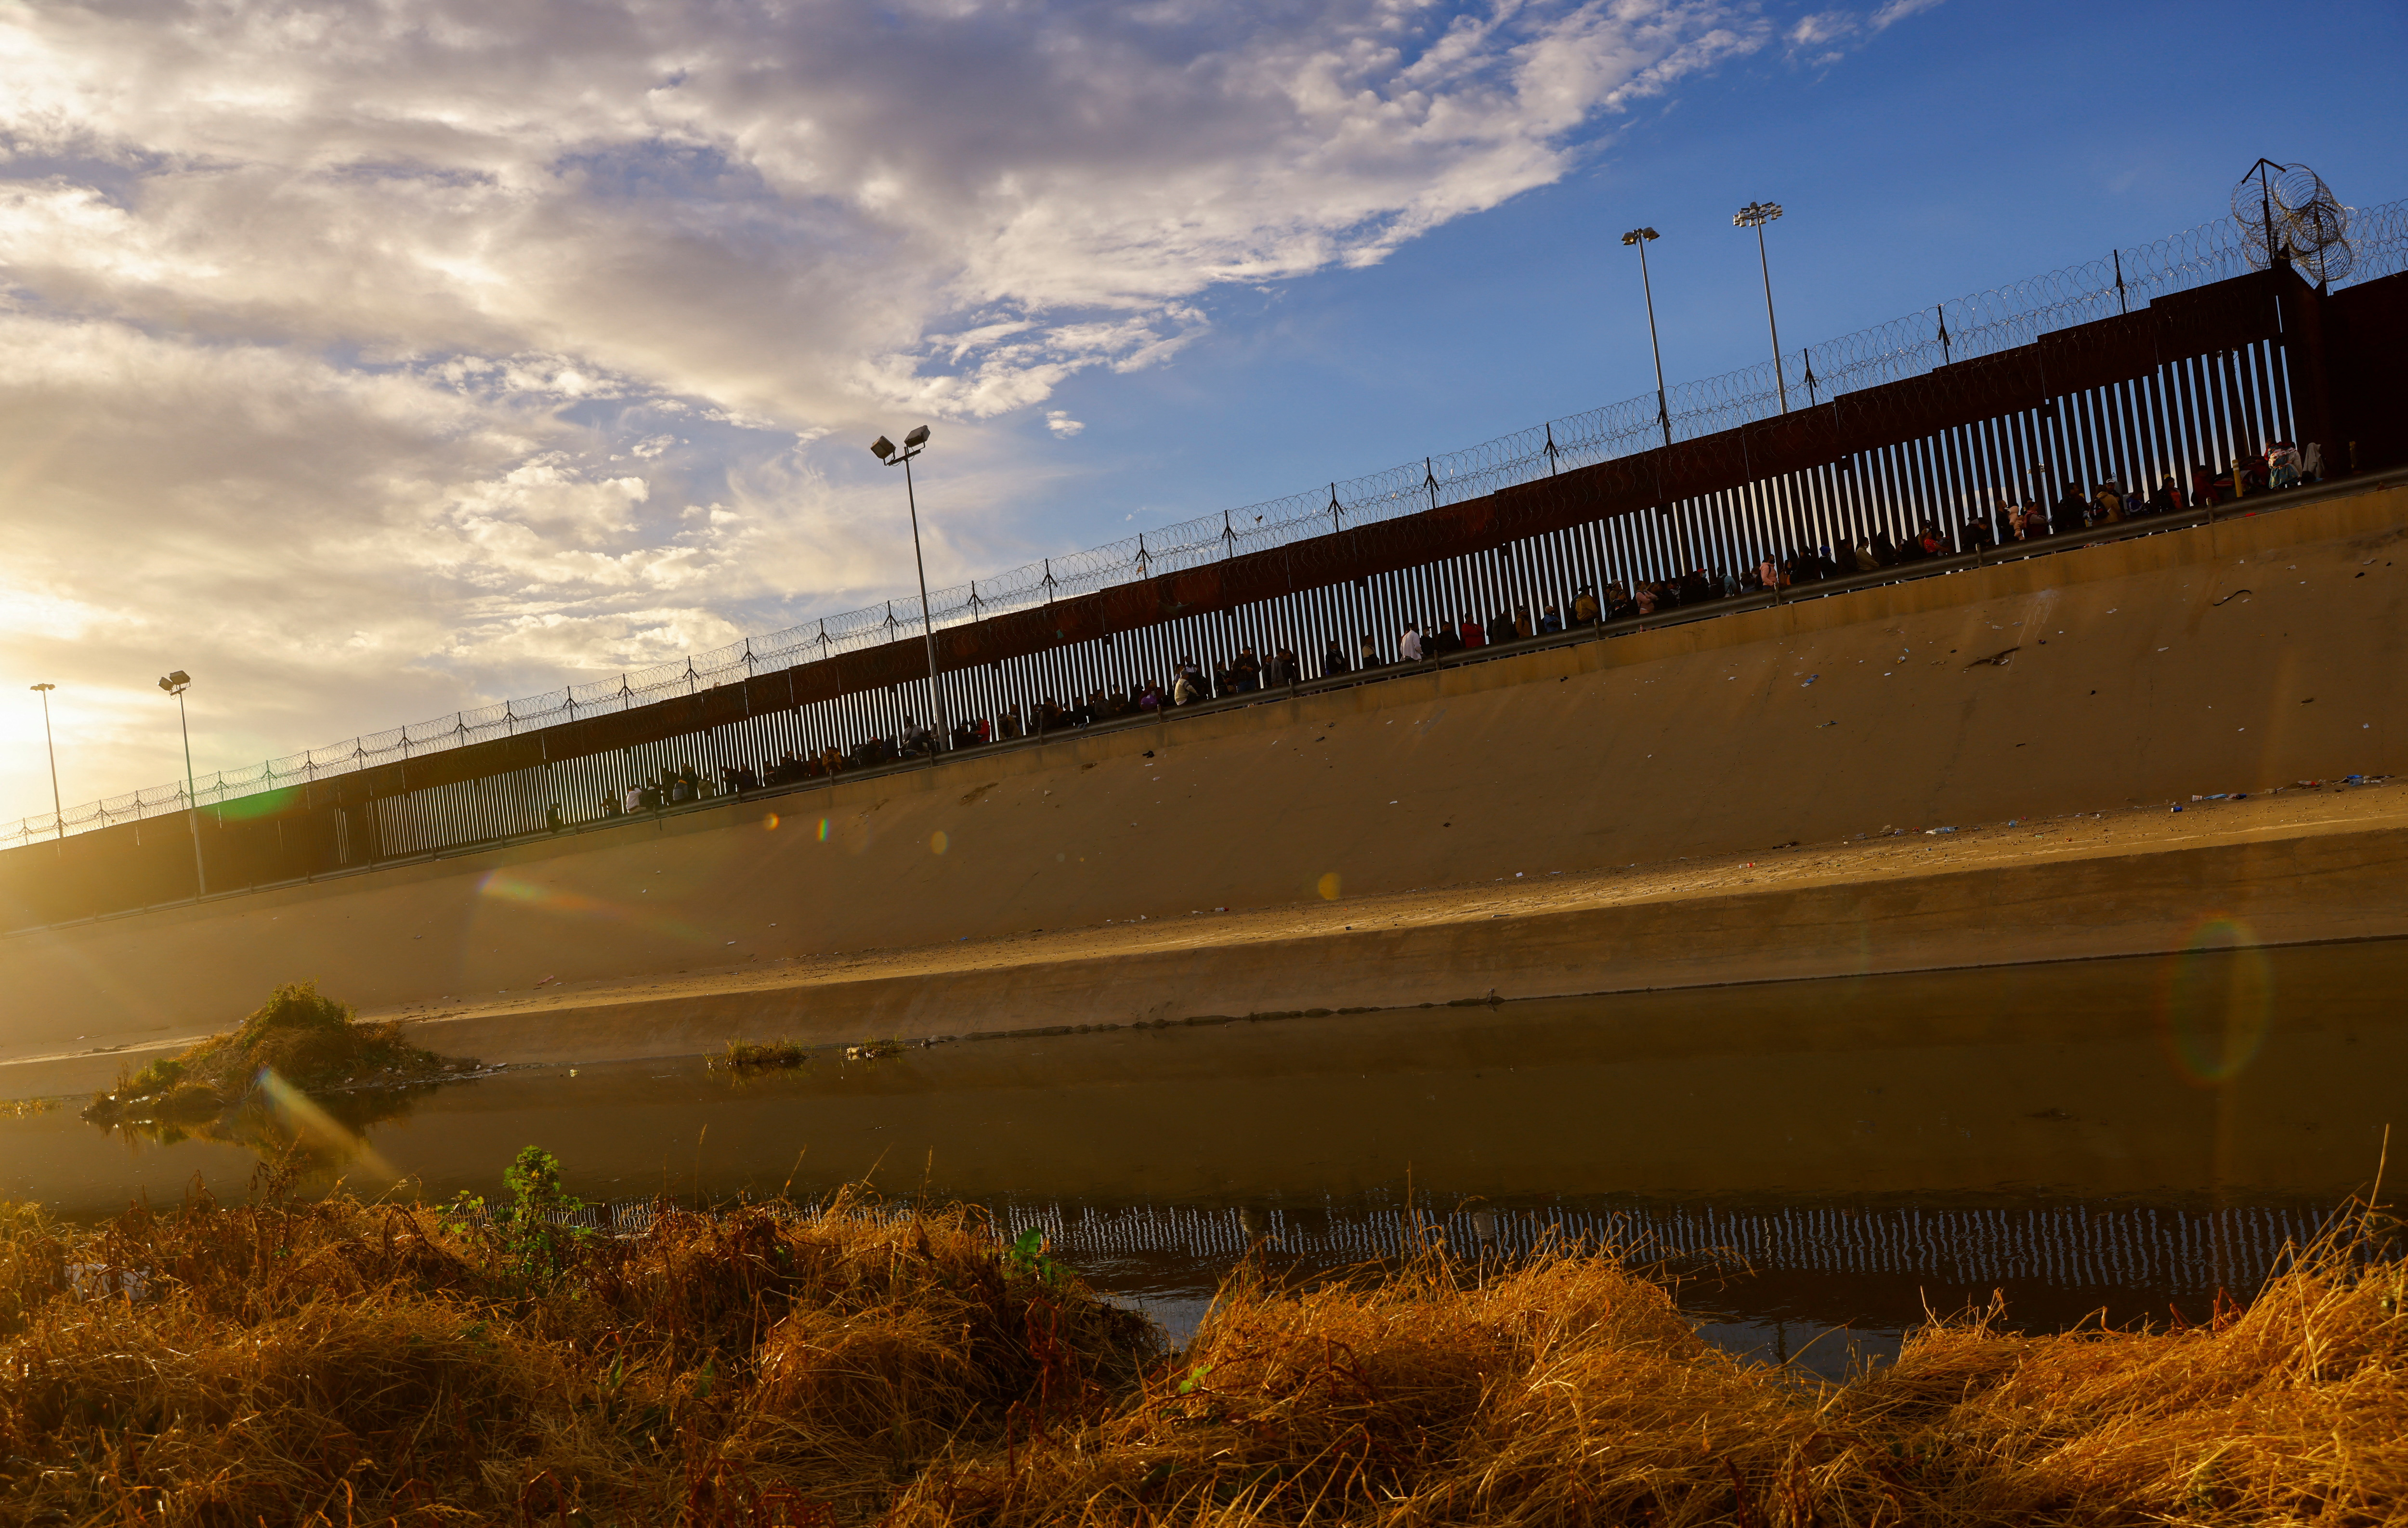 Migrants queue near the border fence, after crossing the Rio Bravo river, in Ciudad Juarez